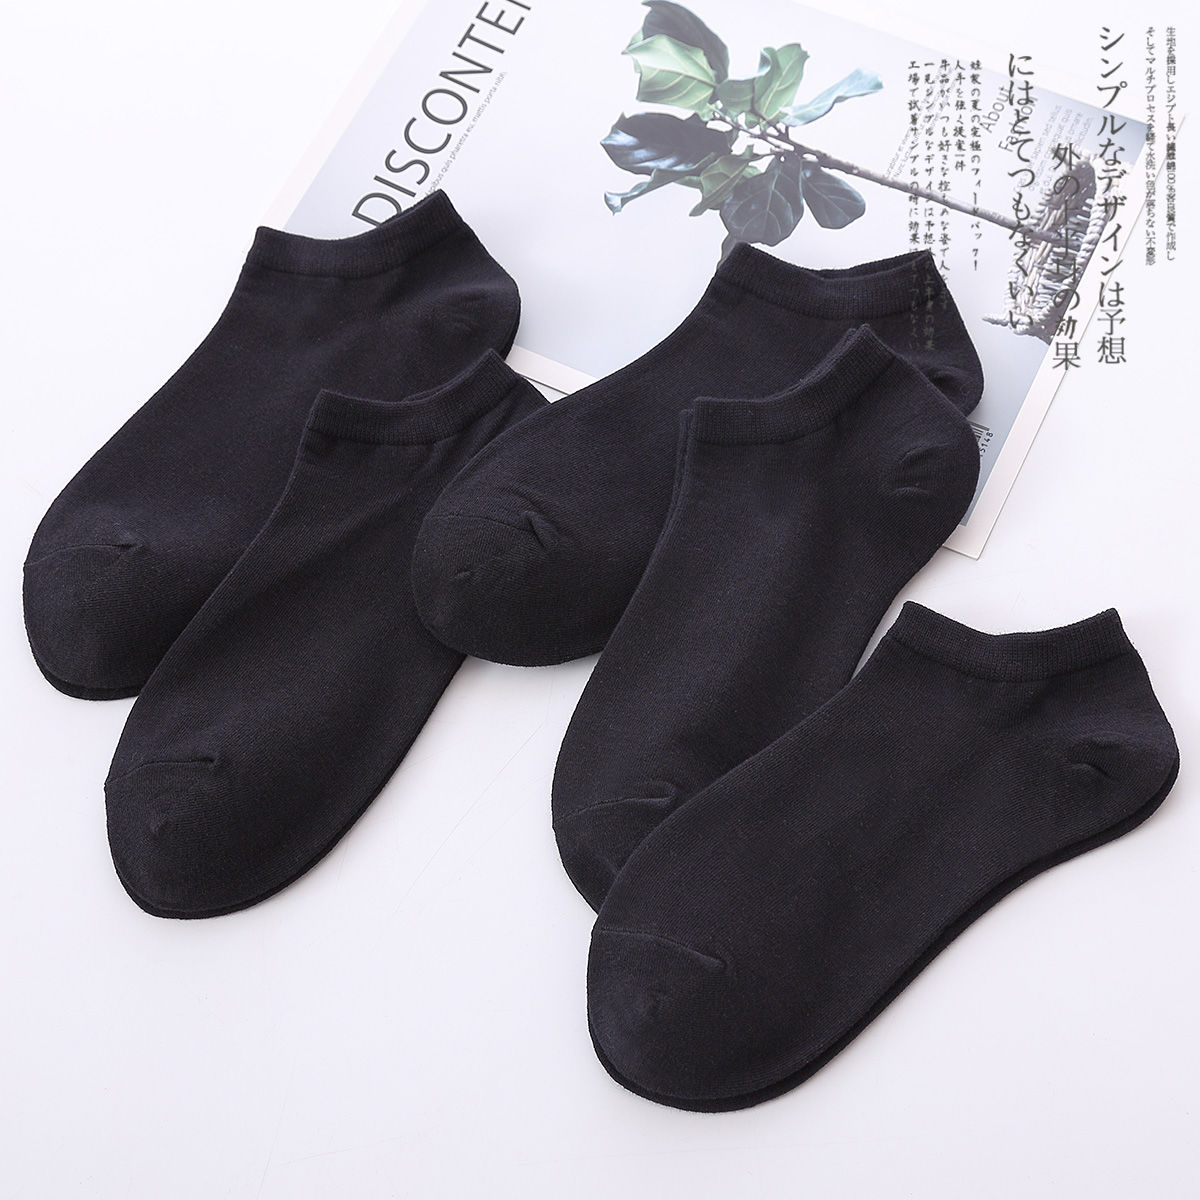 【5/10คู่ถุงเท้าฤดูร้อนส่วนบาง】ถุงเท้าผู้ชายถุงเท้าถุงเท้าถุงเท้าเรือดูดซับเหงื่อระบายอากาศถุงเท้าชายถุงเท้า